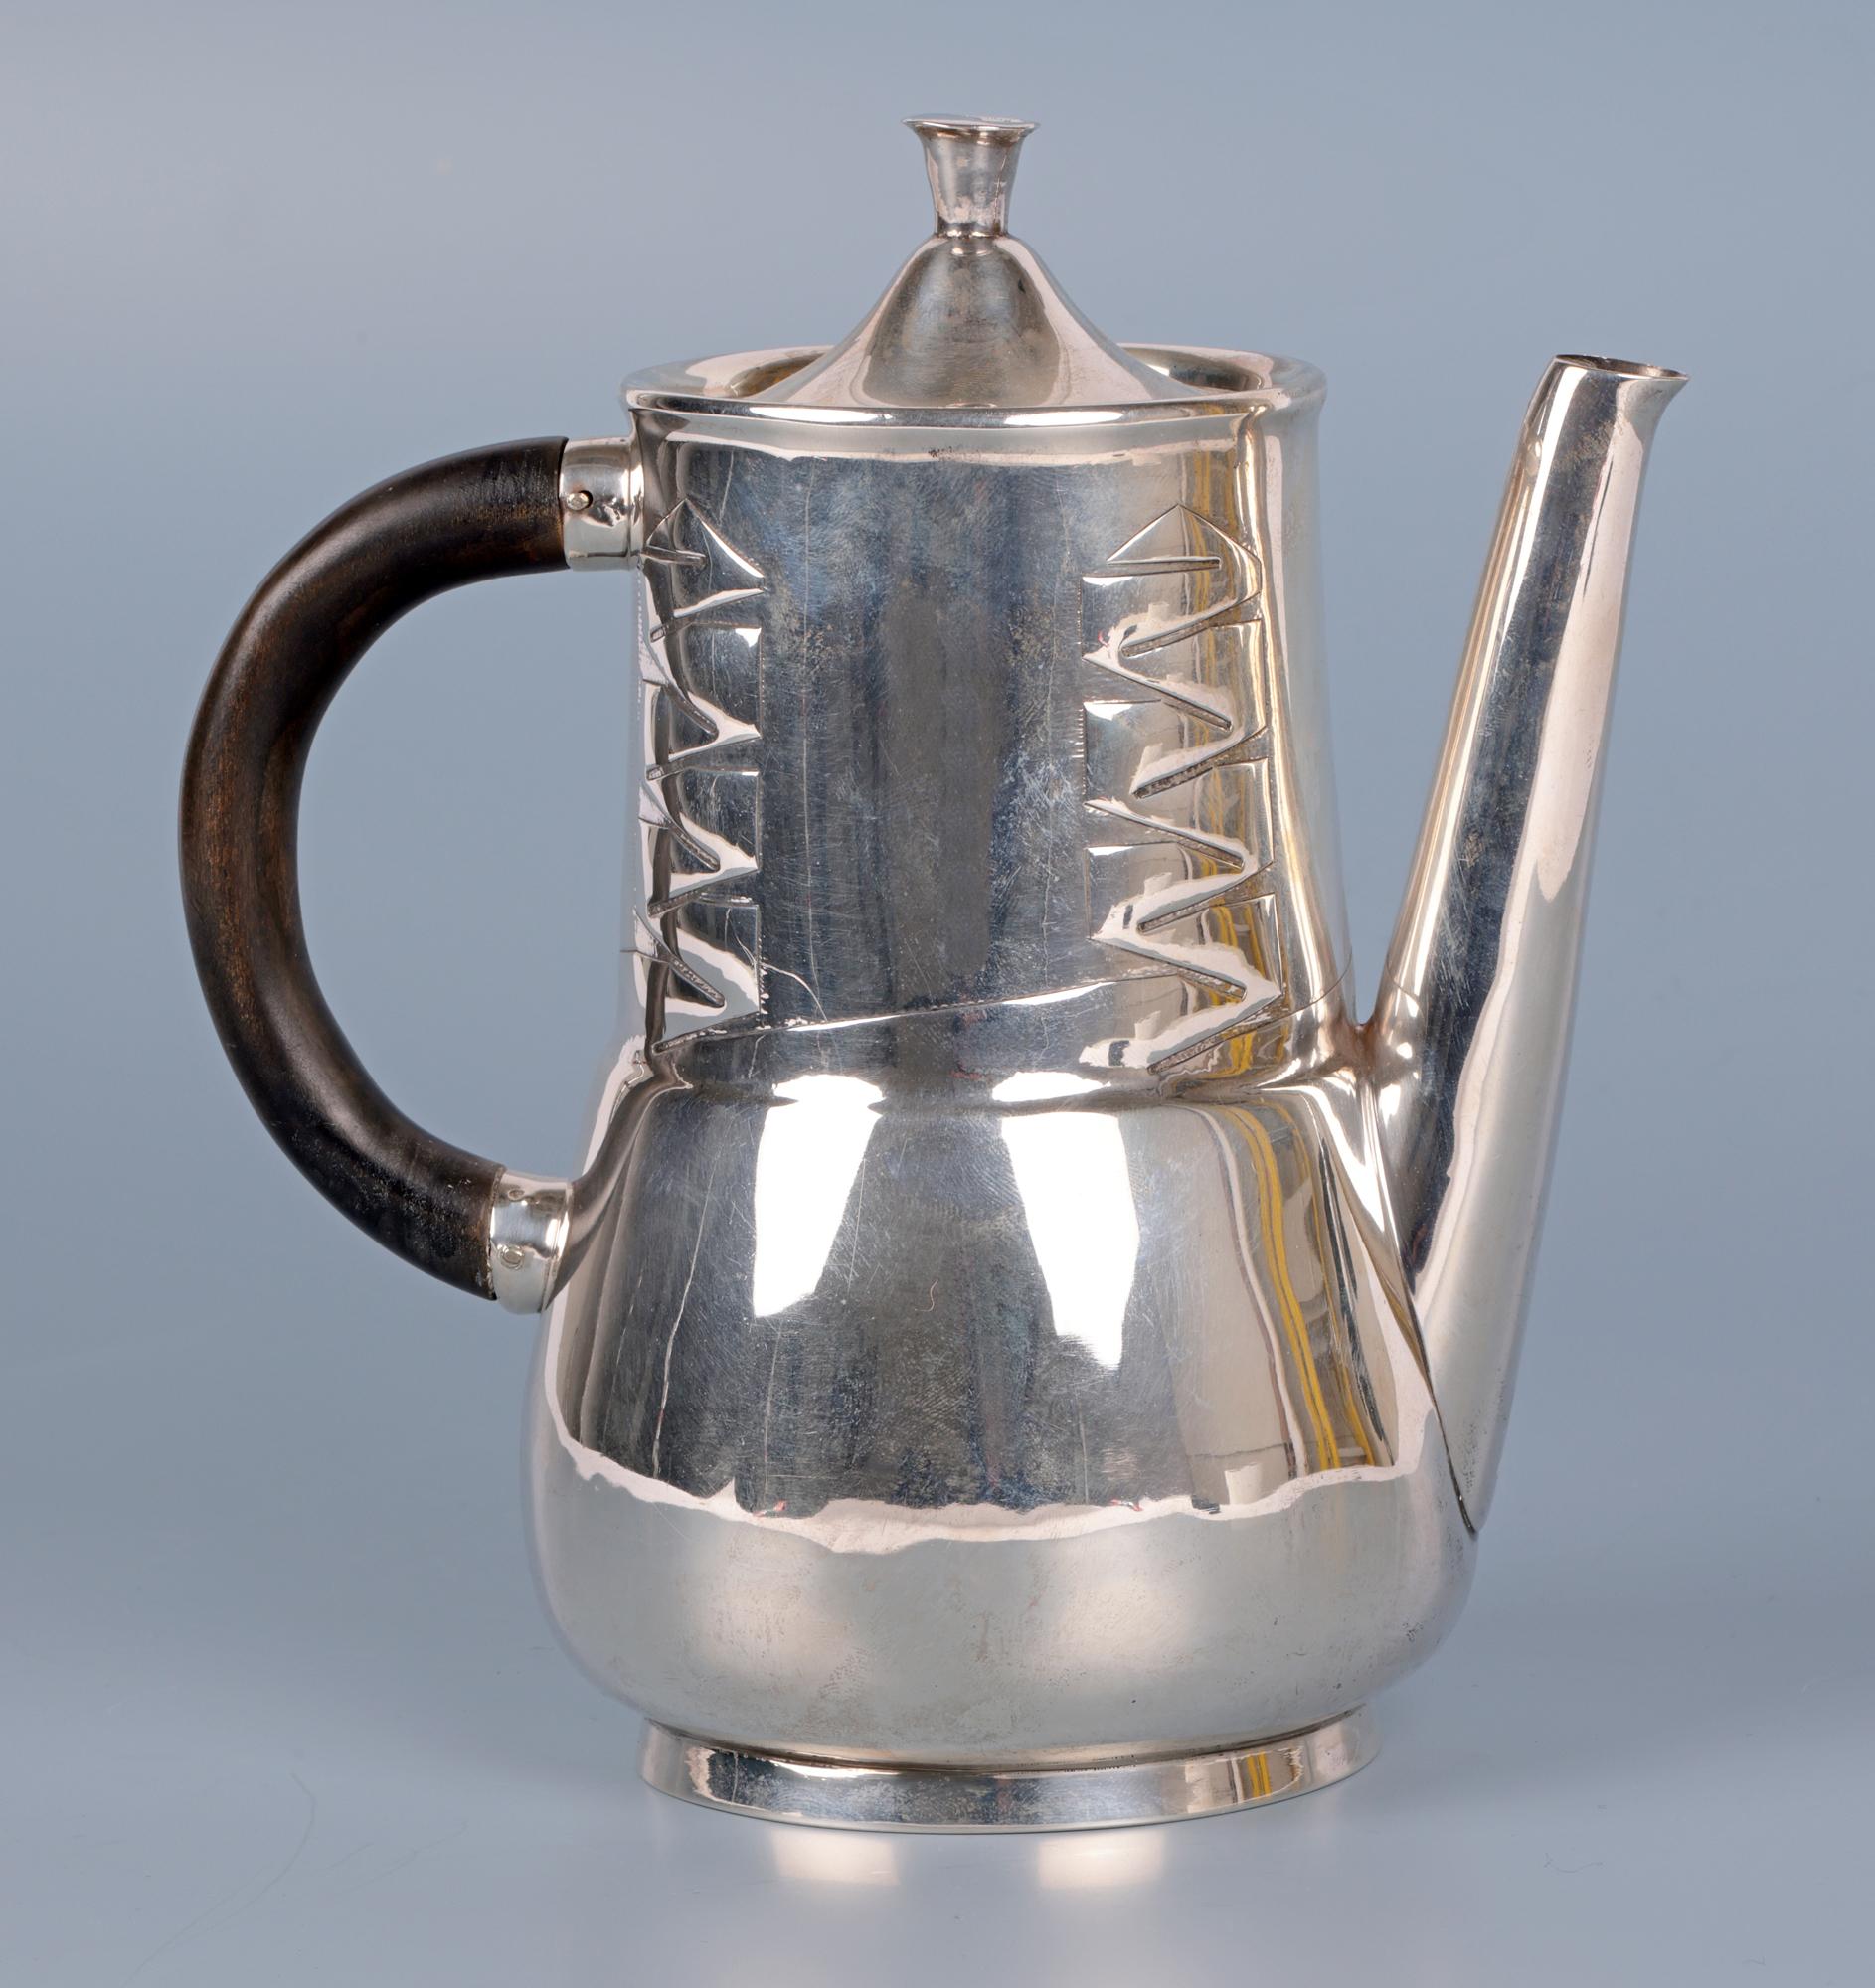  Archibald Knox Liberty & Co Silver Art Nouveau Silver Teapot For Sale 4